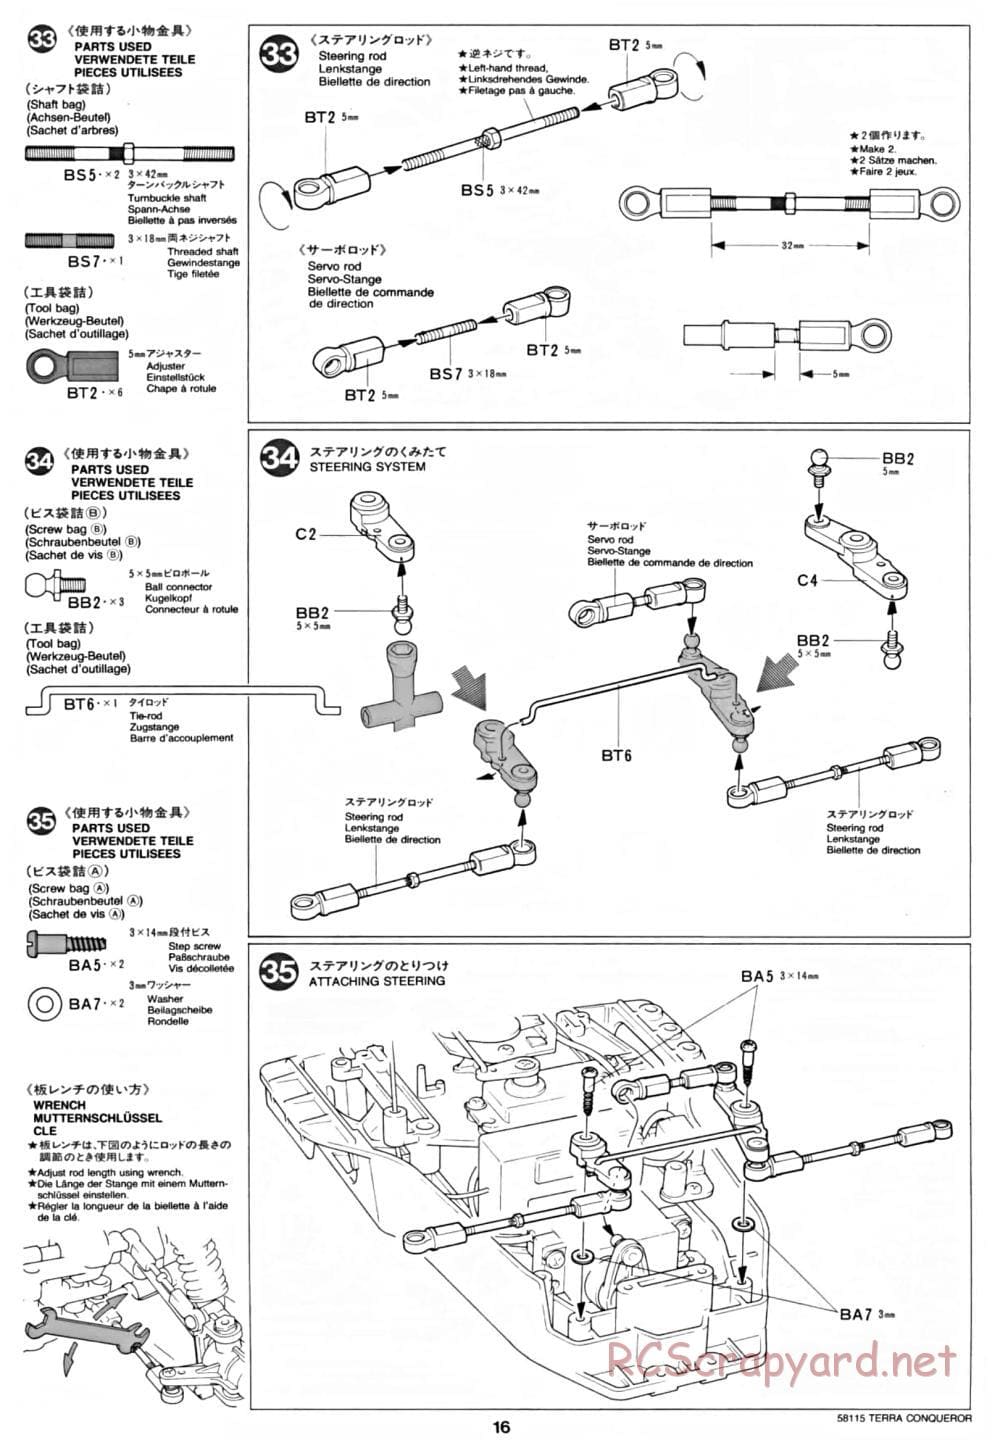 Tamiya - Terra Conqueror Chassis - Manual - Page 16